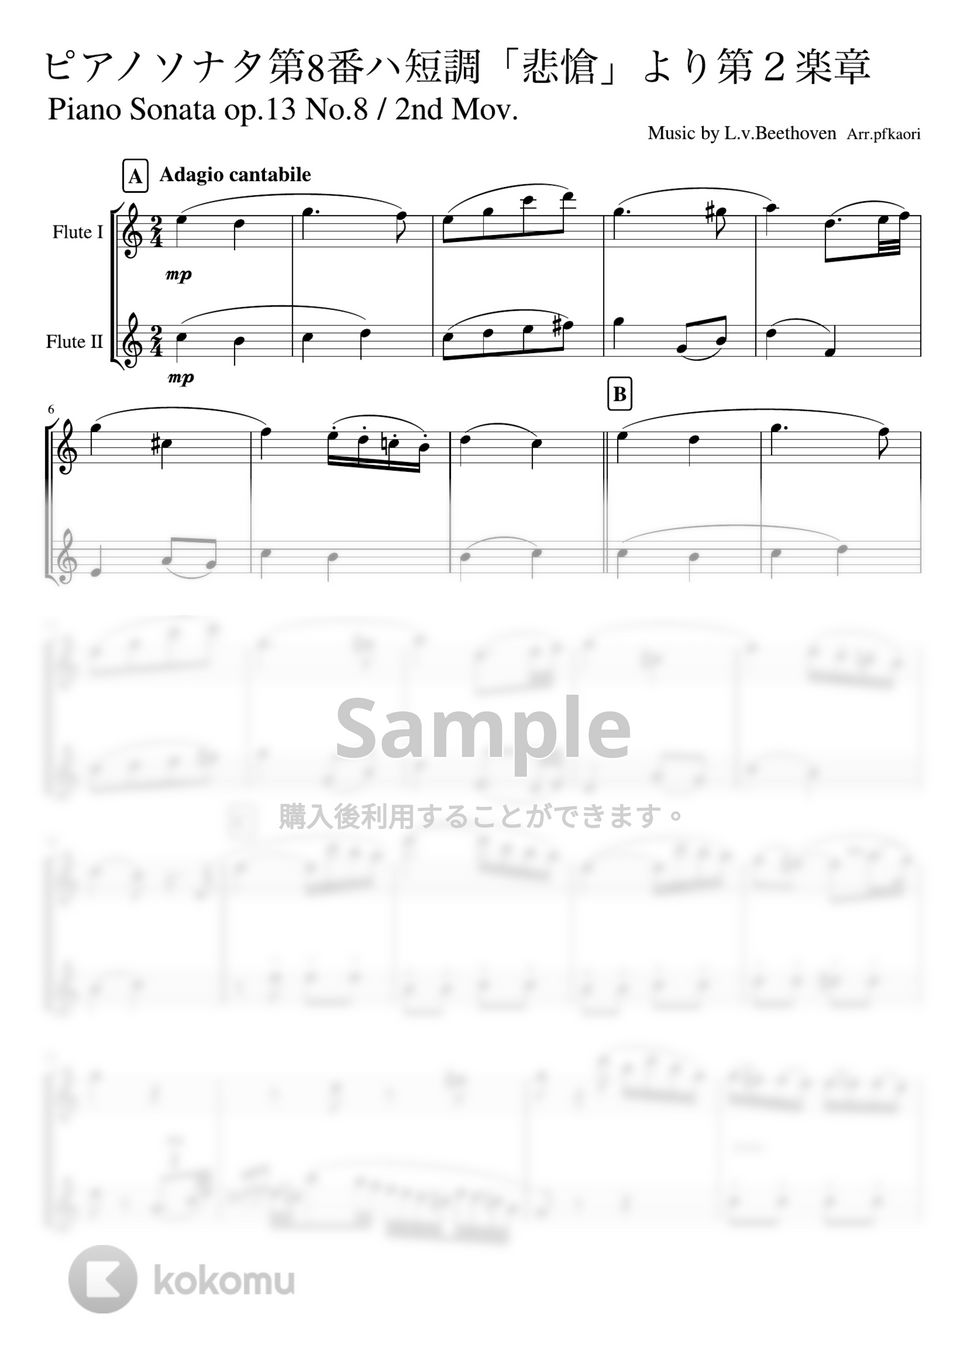 ベートーヴェン - ピアノソナタ第8番第2楽章「悲愴」 (フルート二重奏 /無伴奏)) by pfkaori